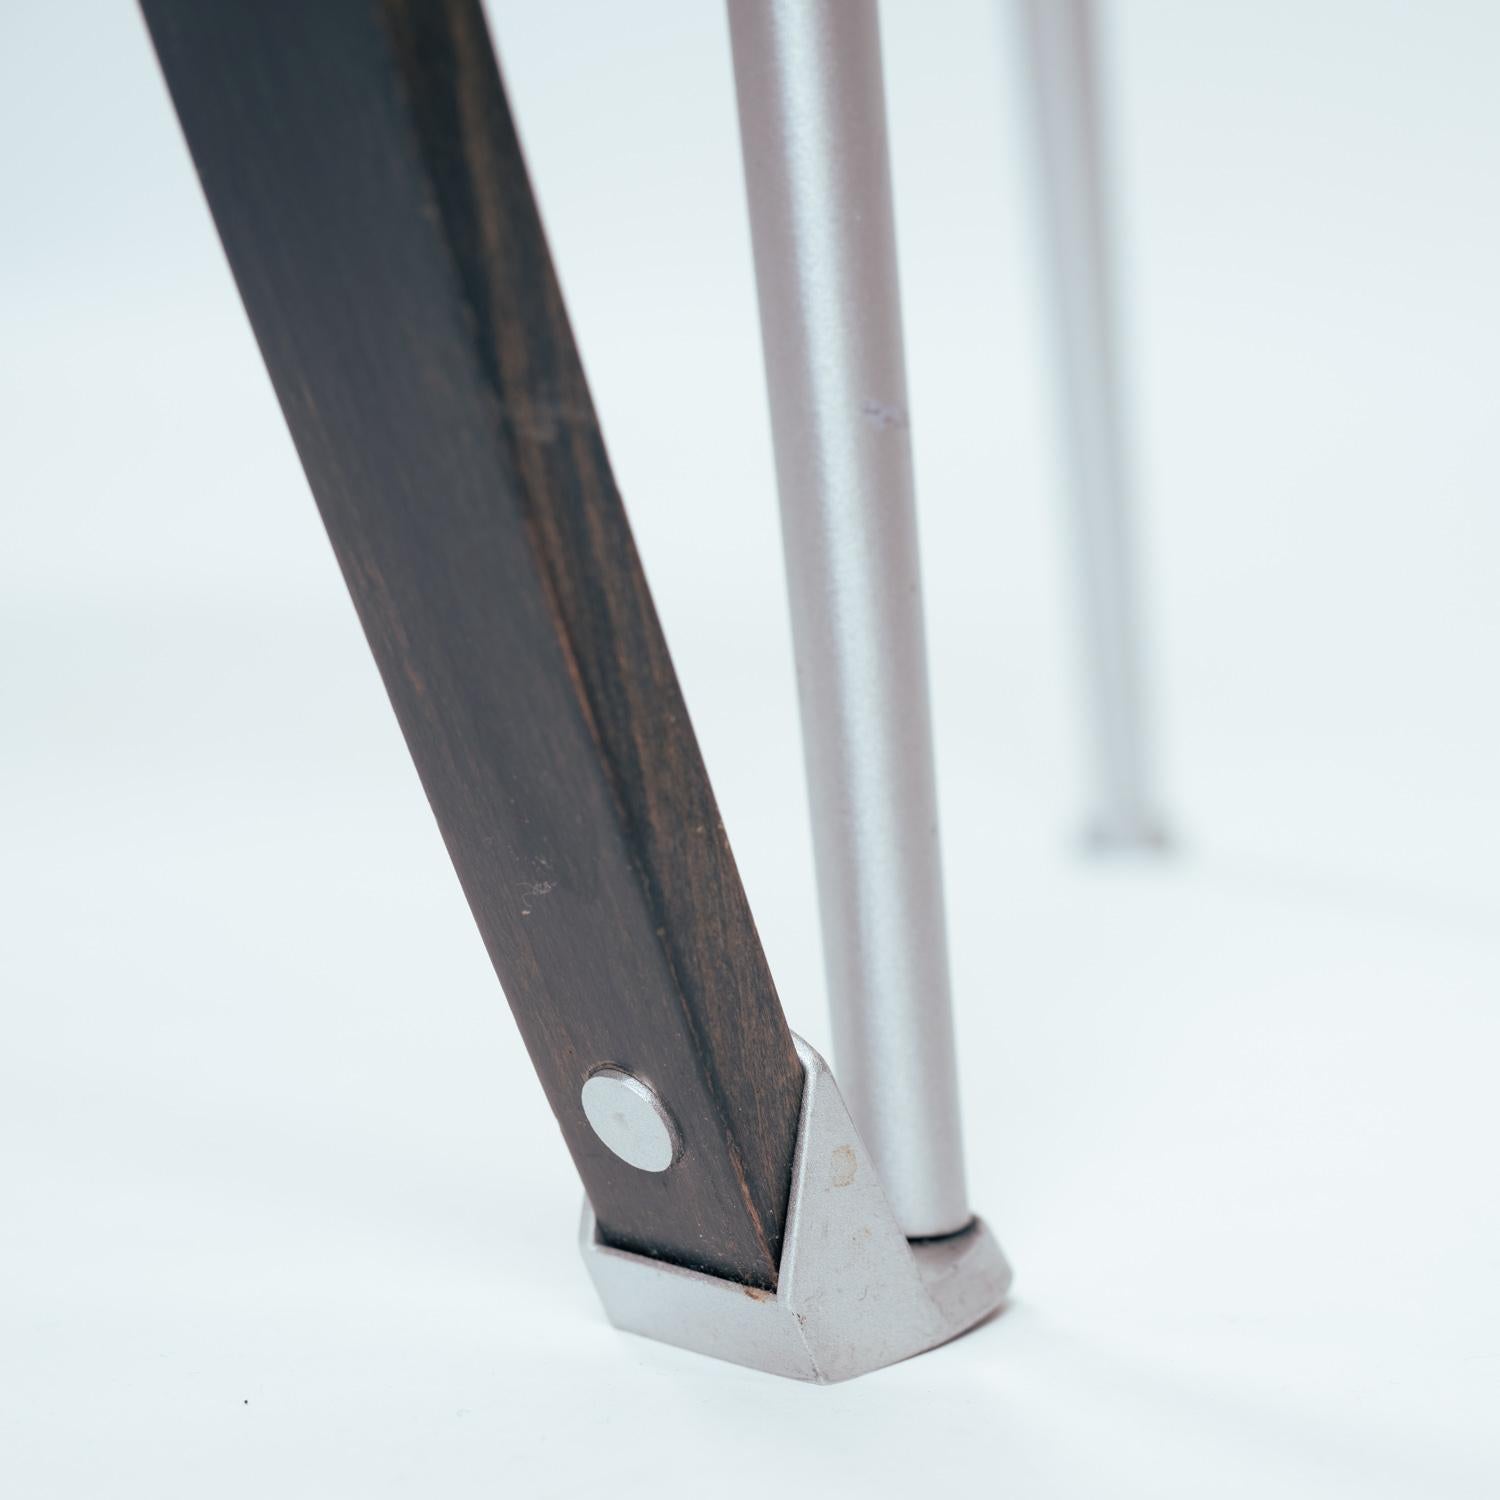 Wunderschöne Esstischsessel 'Revers' von Andrea Branzi für Cassina mit Armlehnen aus braunem Buchenholz, die mit Bändern an Aluminiumrahmen befestigt sind, und passenden Sitzen. Signiert mit Cassina Labels unter den Sitzen.

Diese 1993 entworfenen